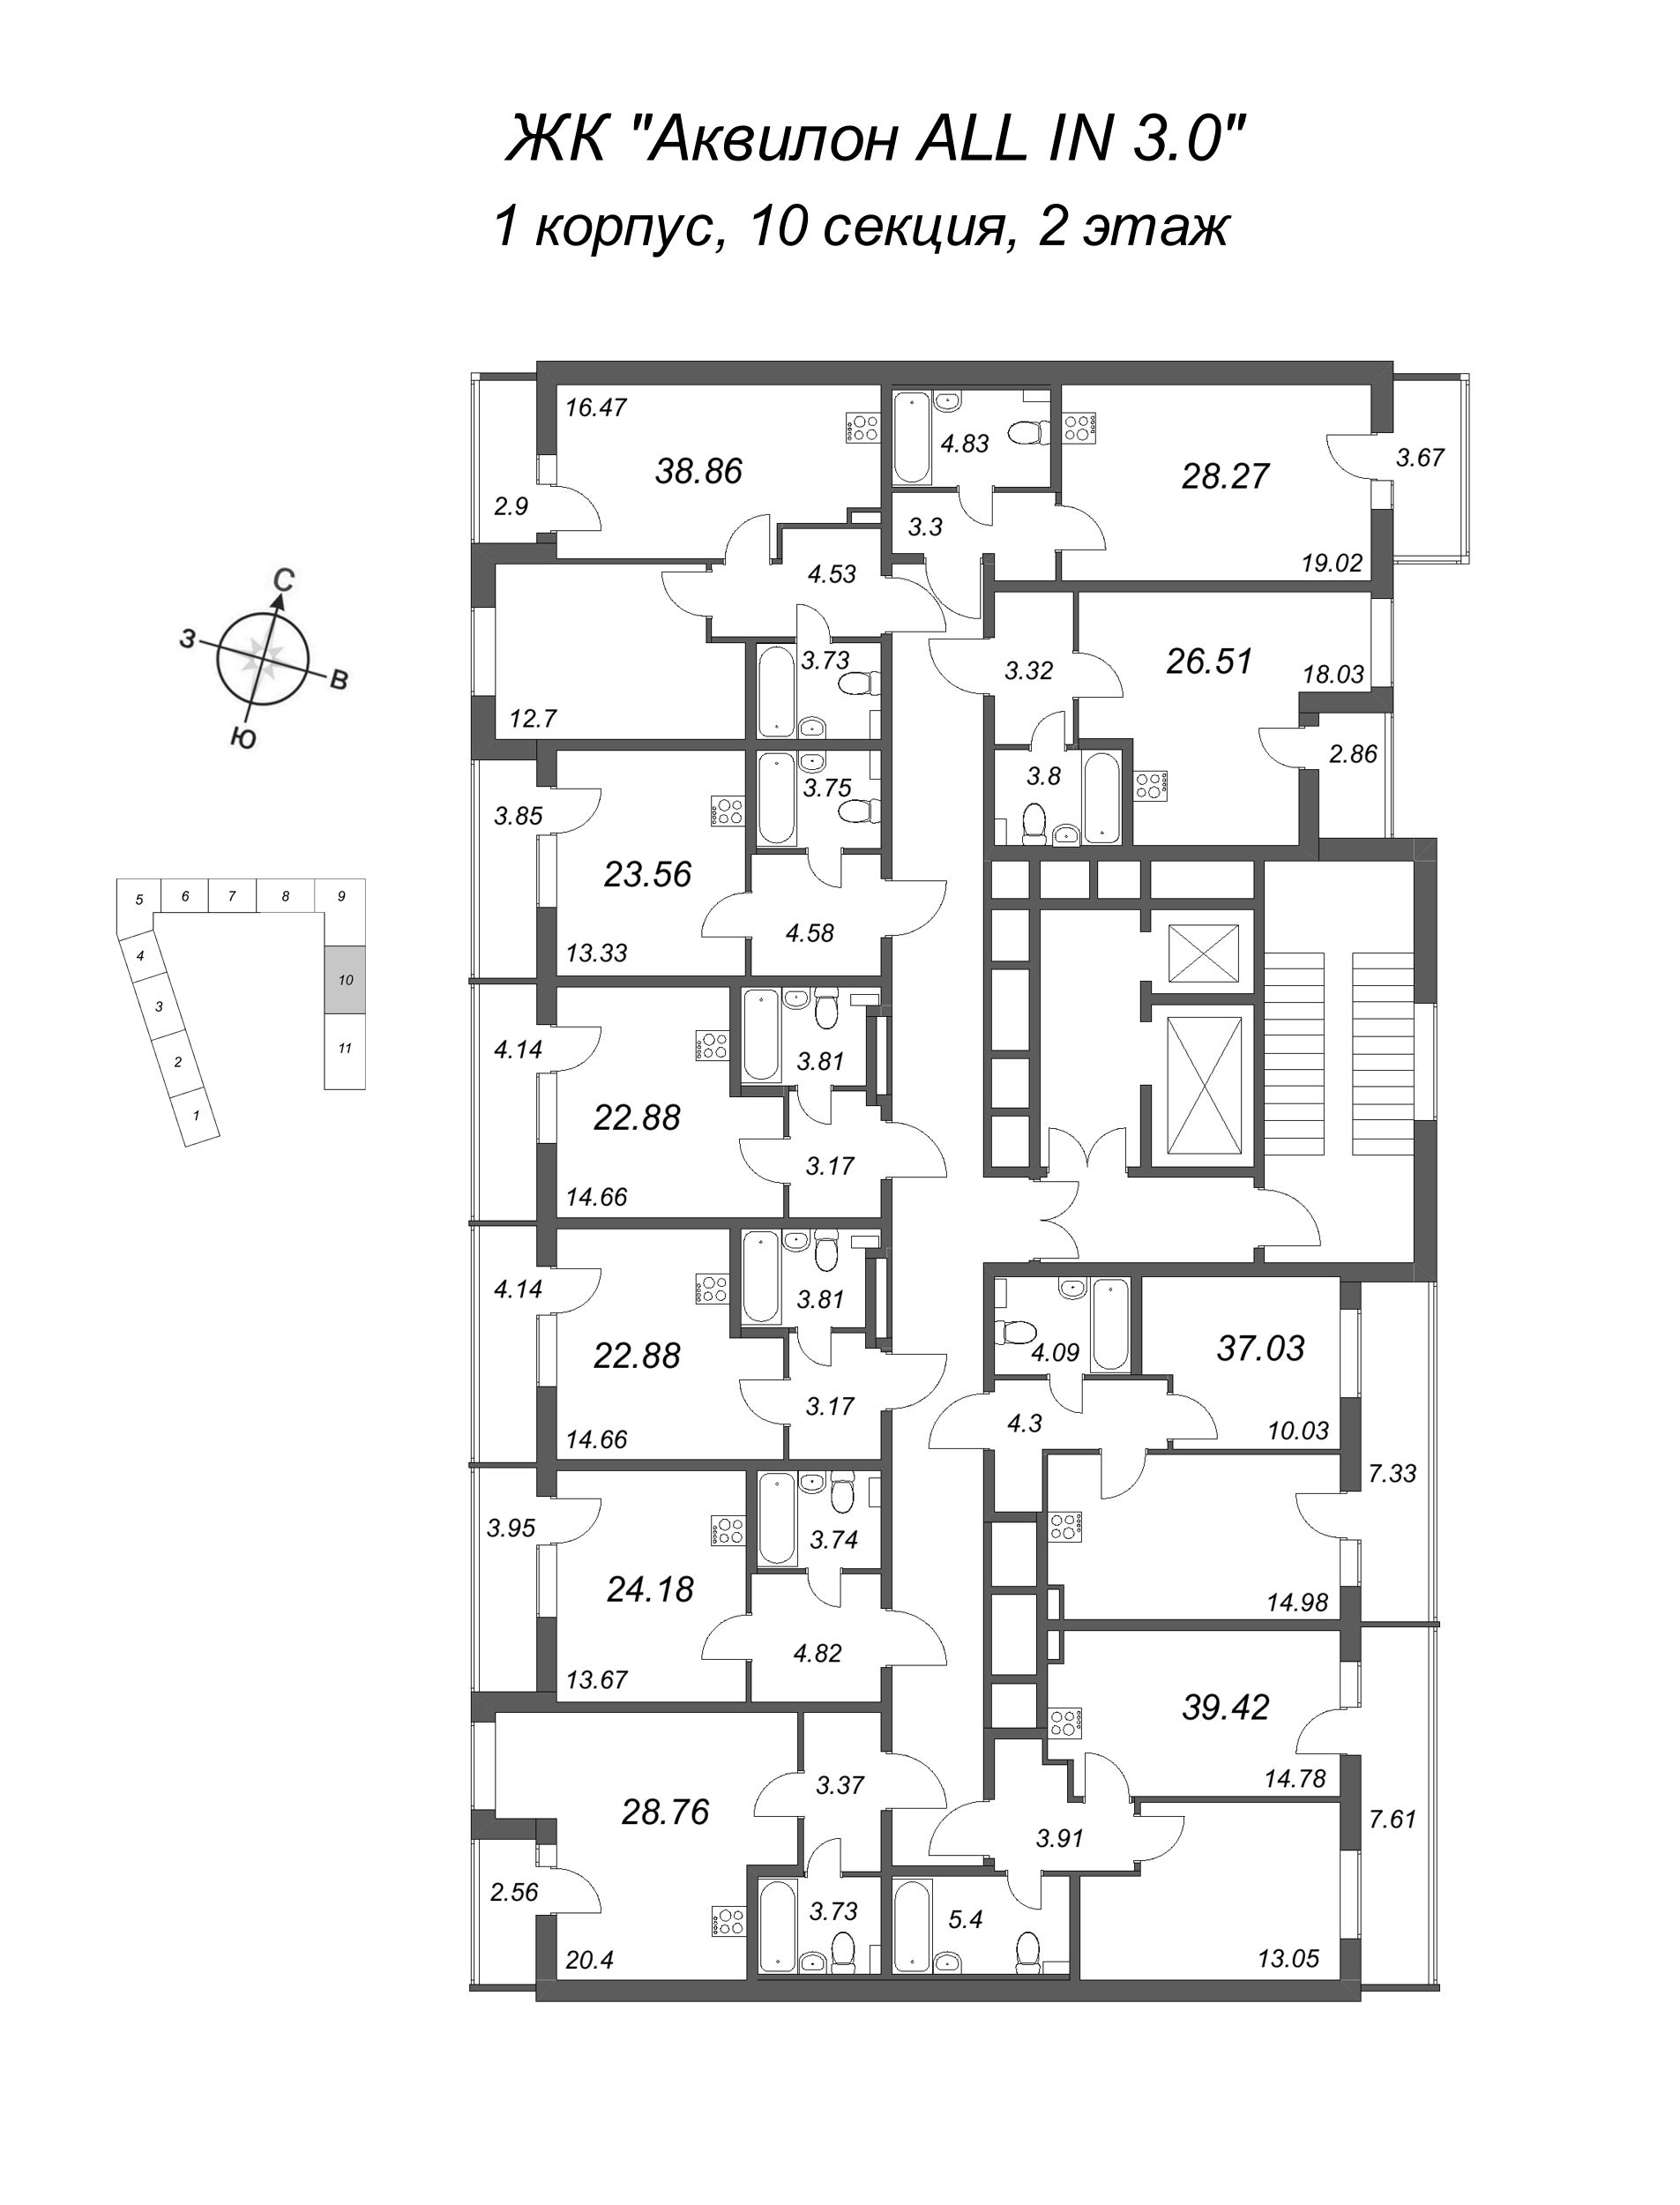 Квартира-студия, 24.18 м² в ЖК "Аквилон All in 3.0" - планировка этажа